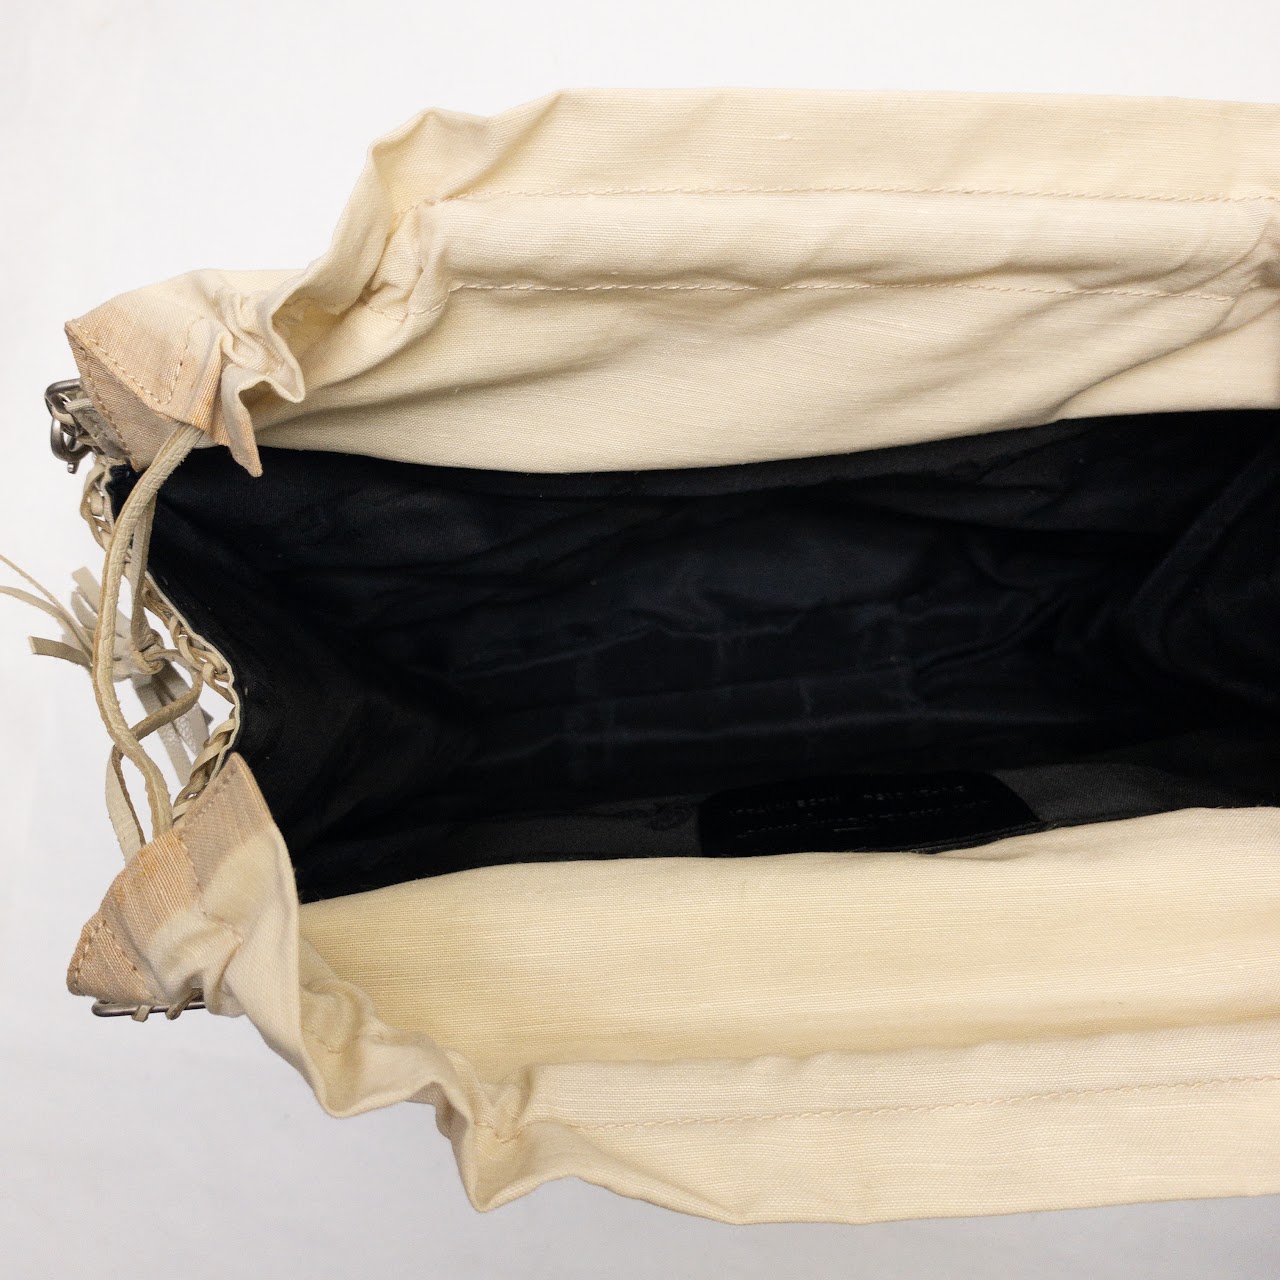 Salvatore Ferragamo  Woven Leather Crossbody Bag